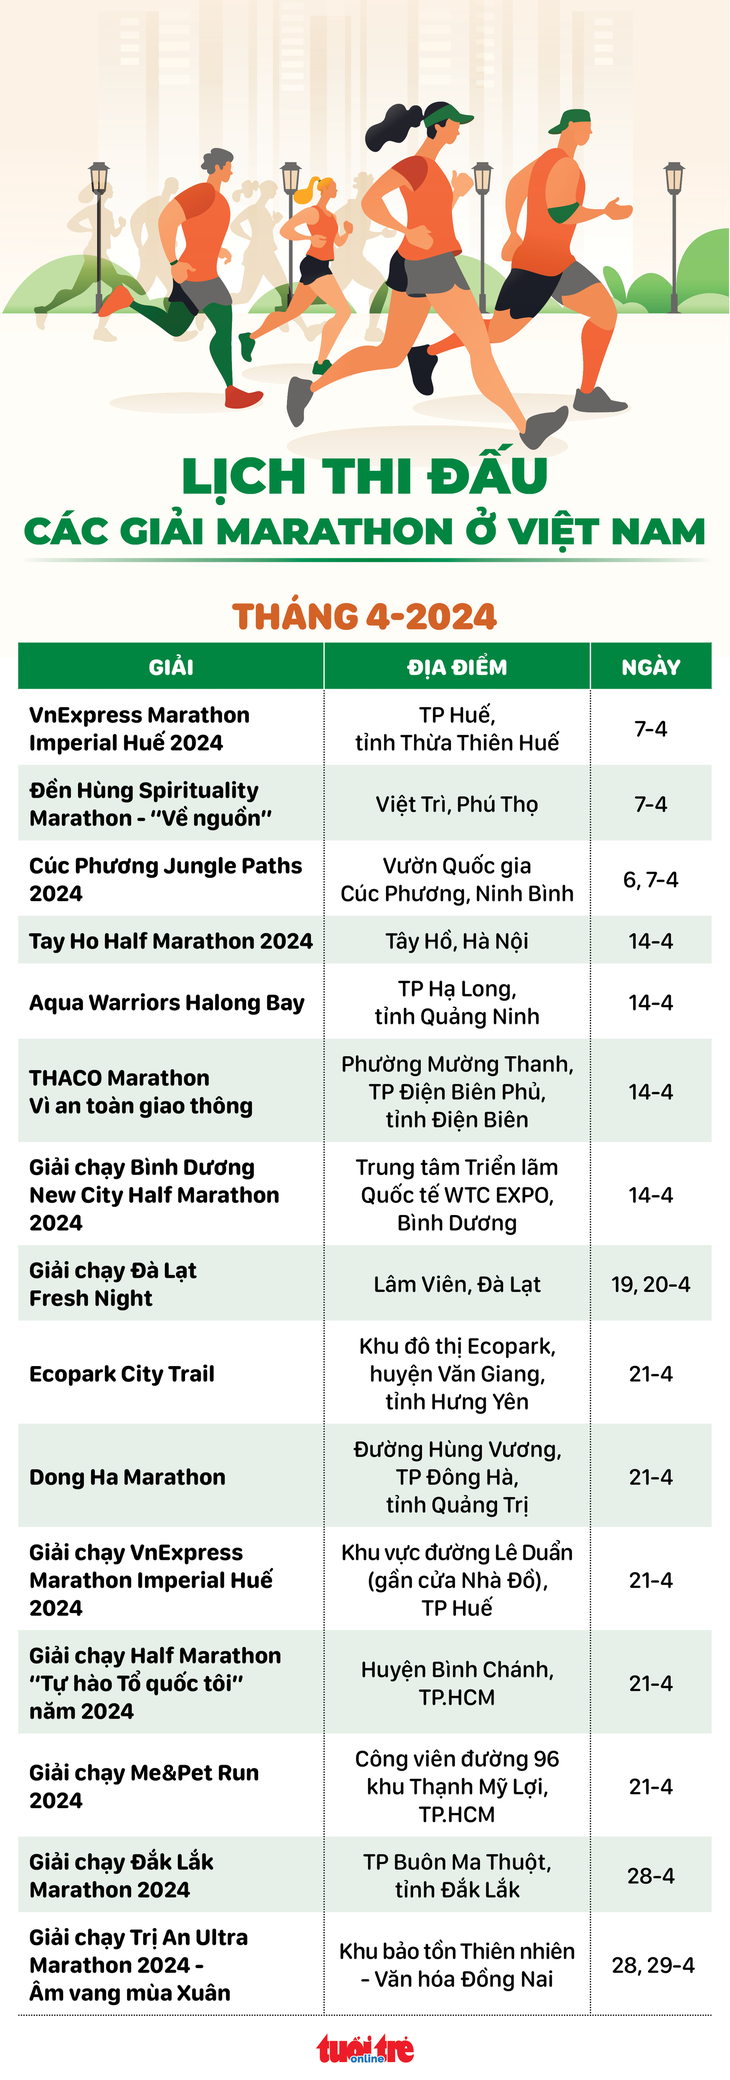 Lịch các giải marathon tại Việt Nam trong tháng 4 - Đồ họa: AN BÌNH